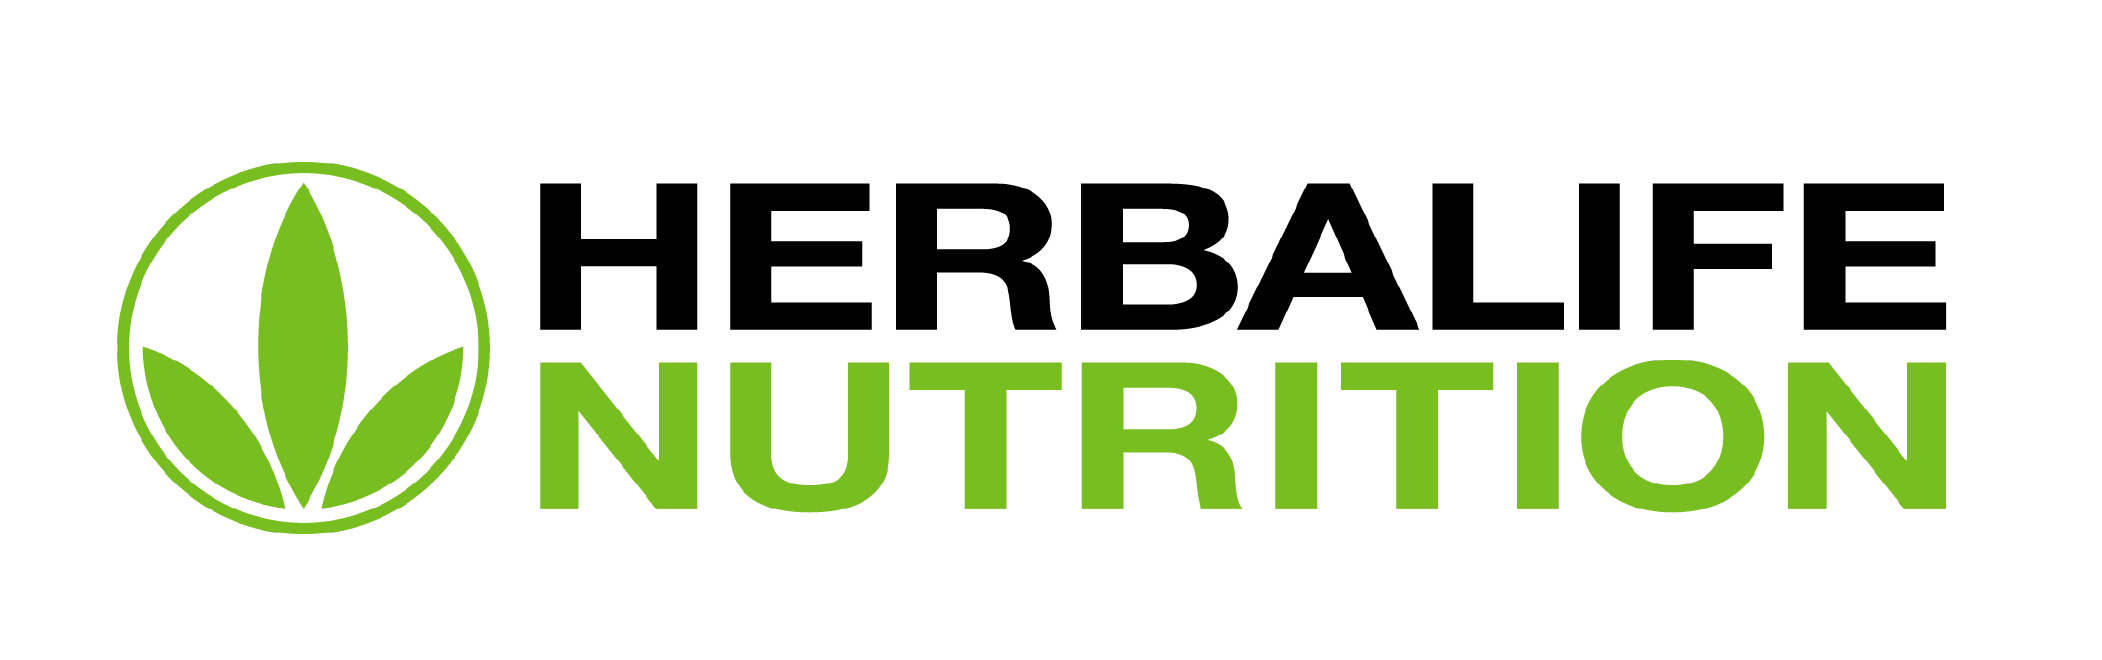 Media Assets. Herbalife Nutrition Ltd